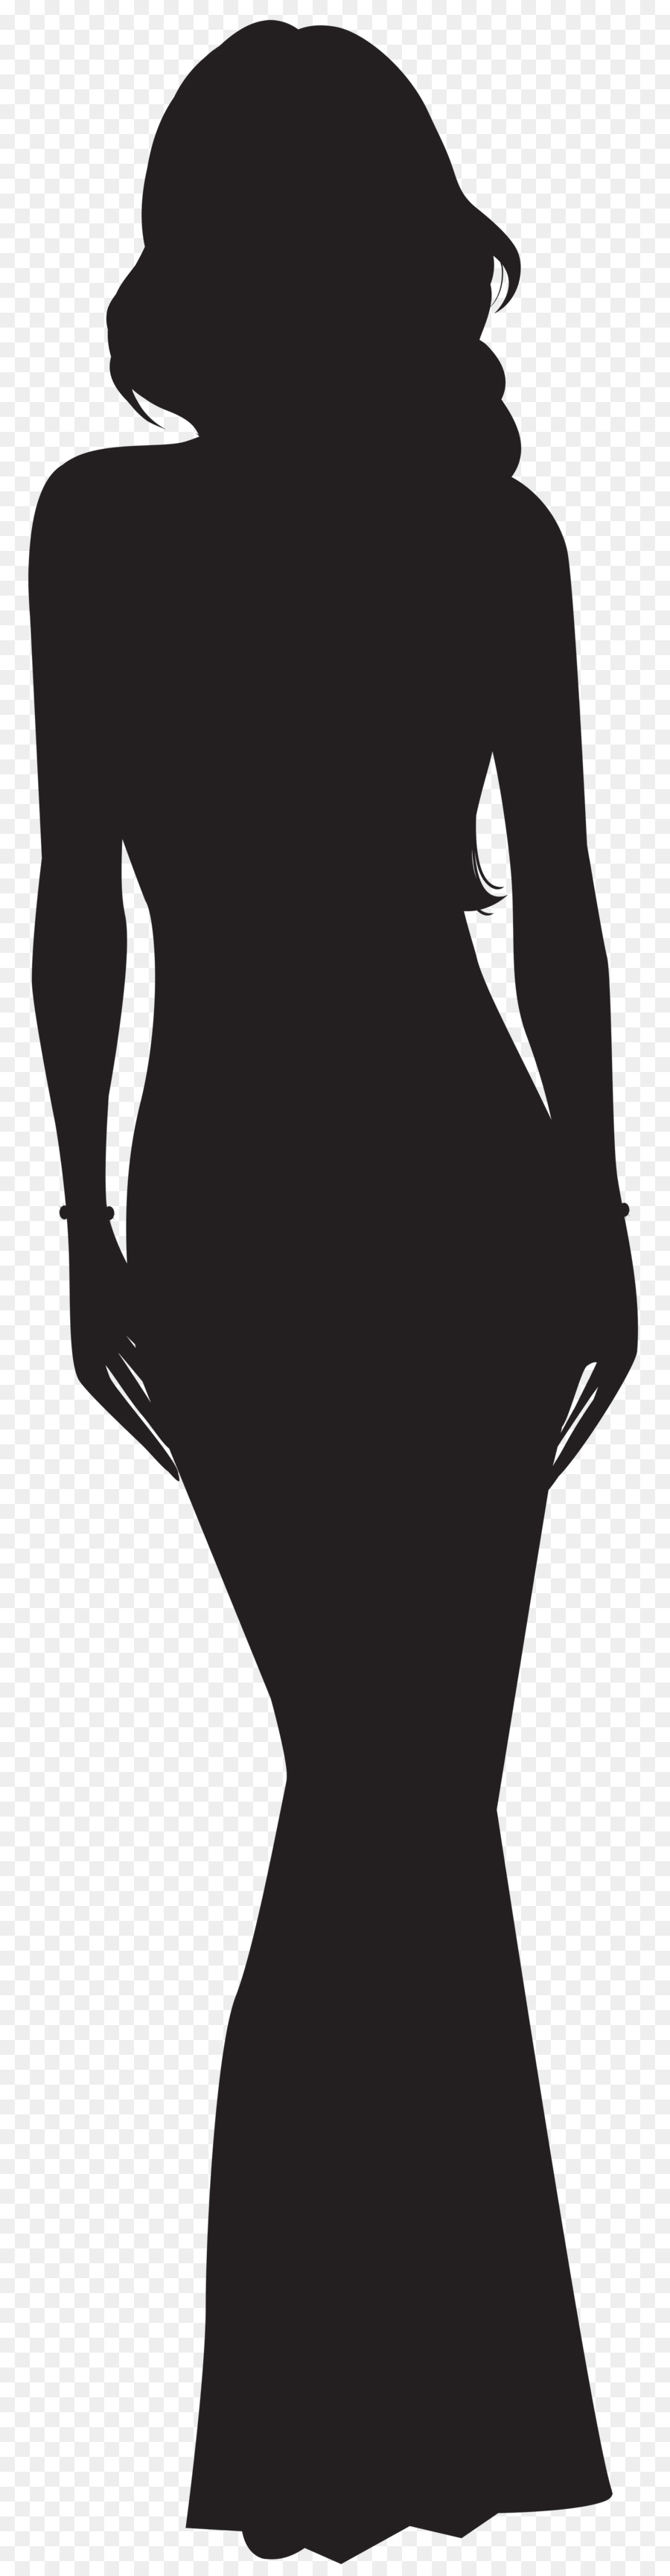 Free Black Woman Silhouette Clip Art, Download Free Black Woman